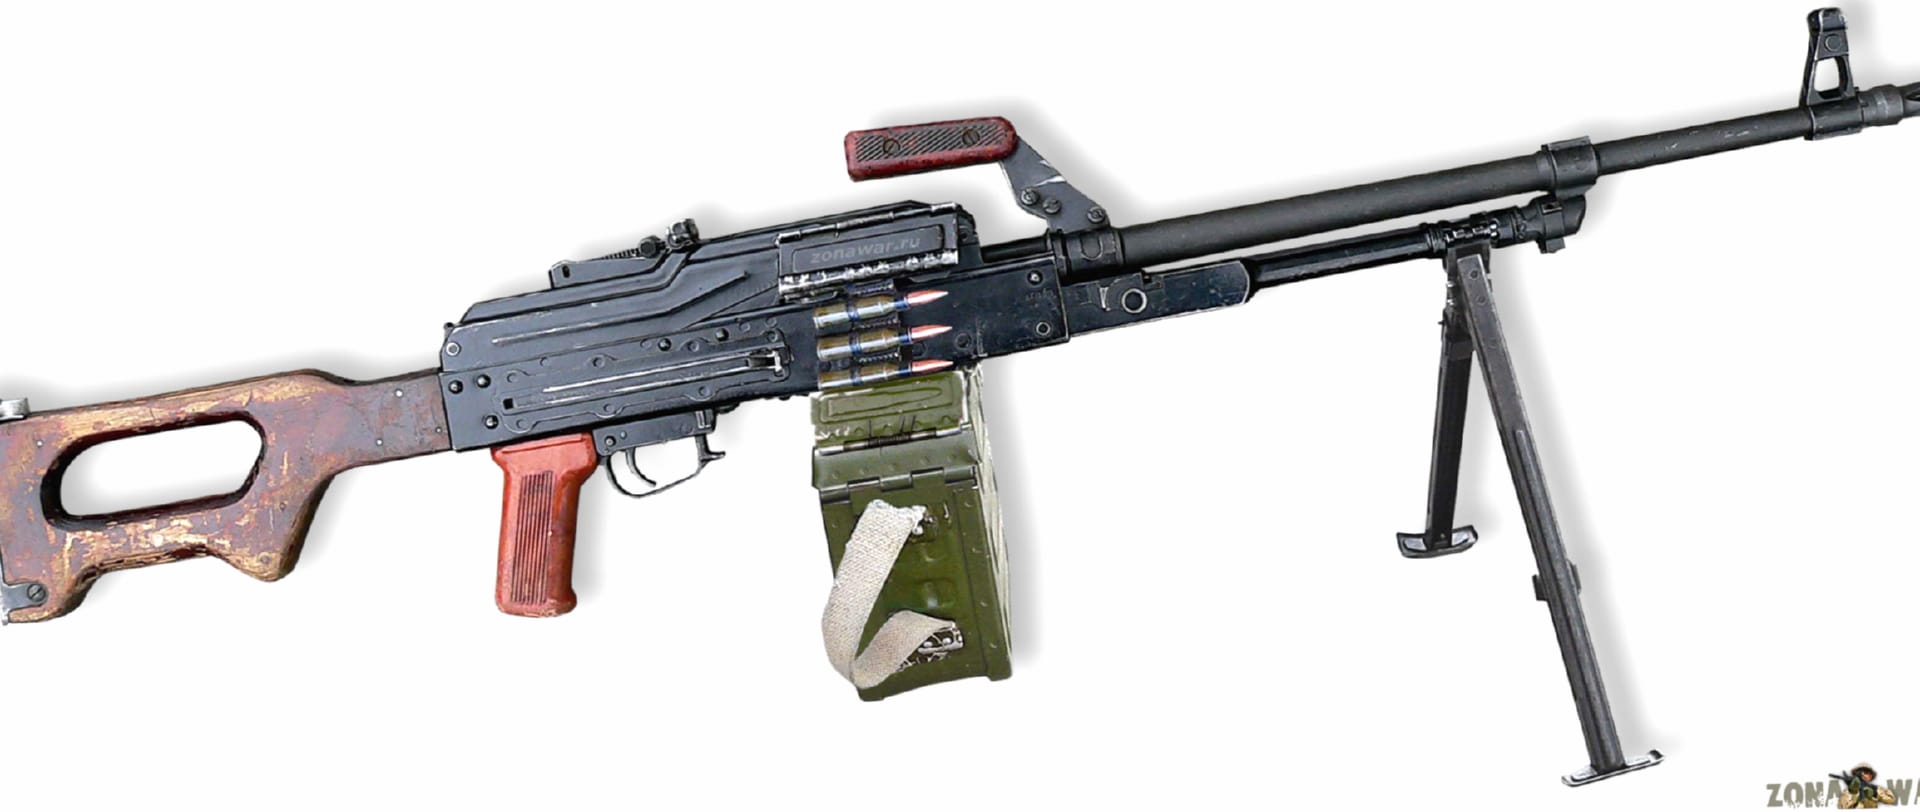 Kalashnikov Pk Rifle wallpapers HD quality